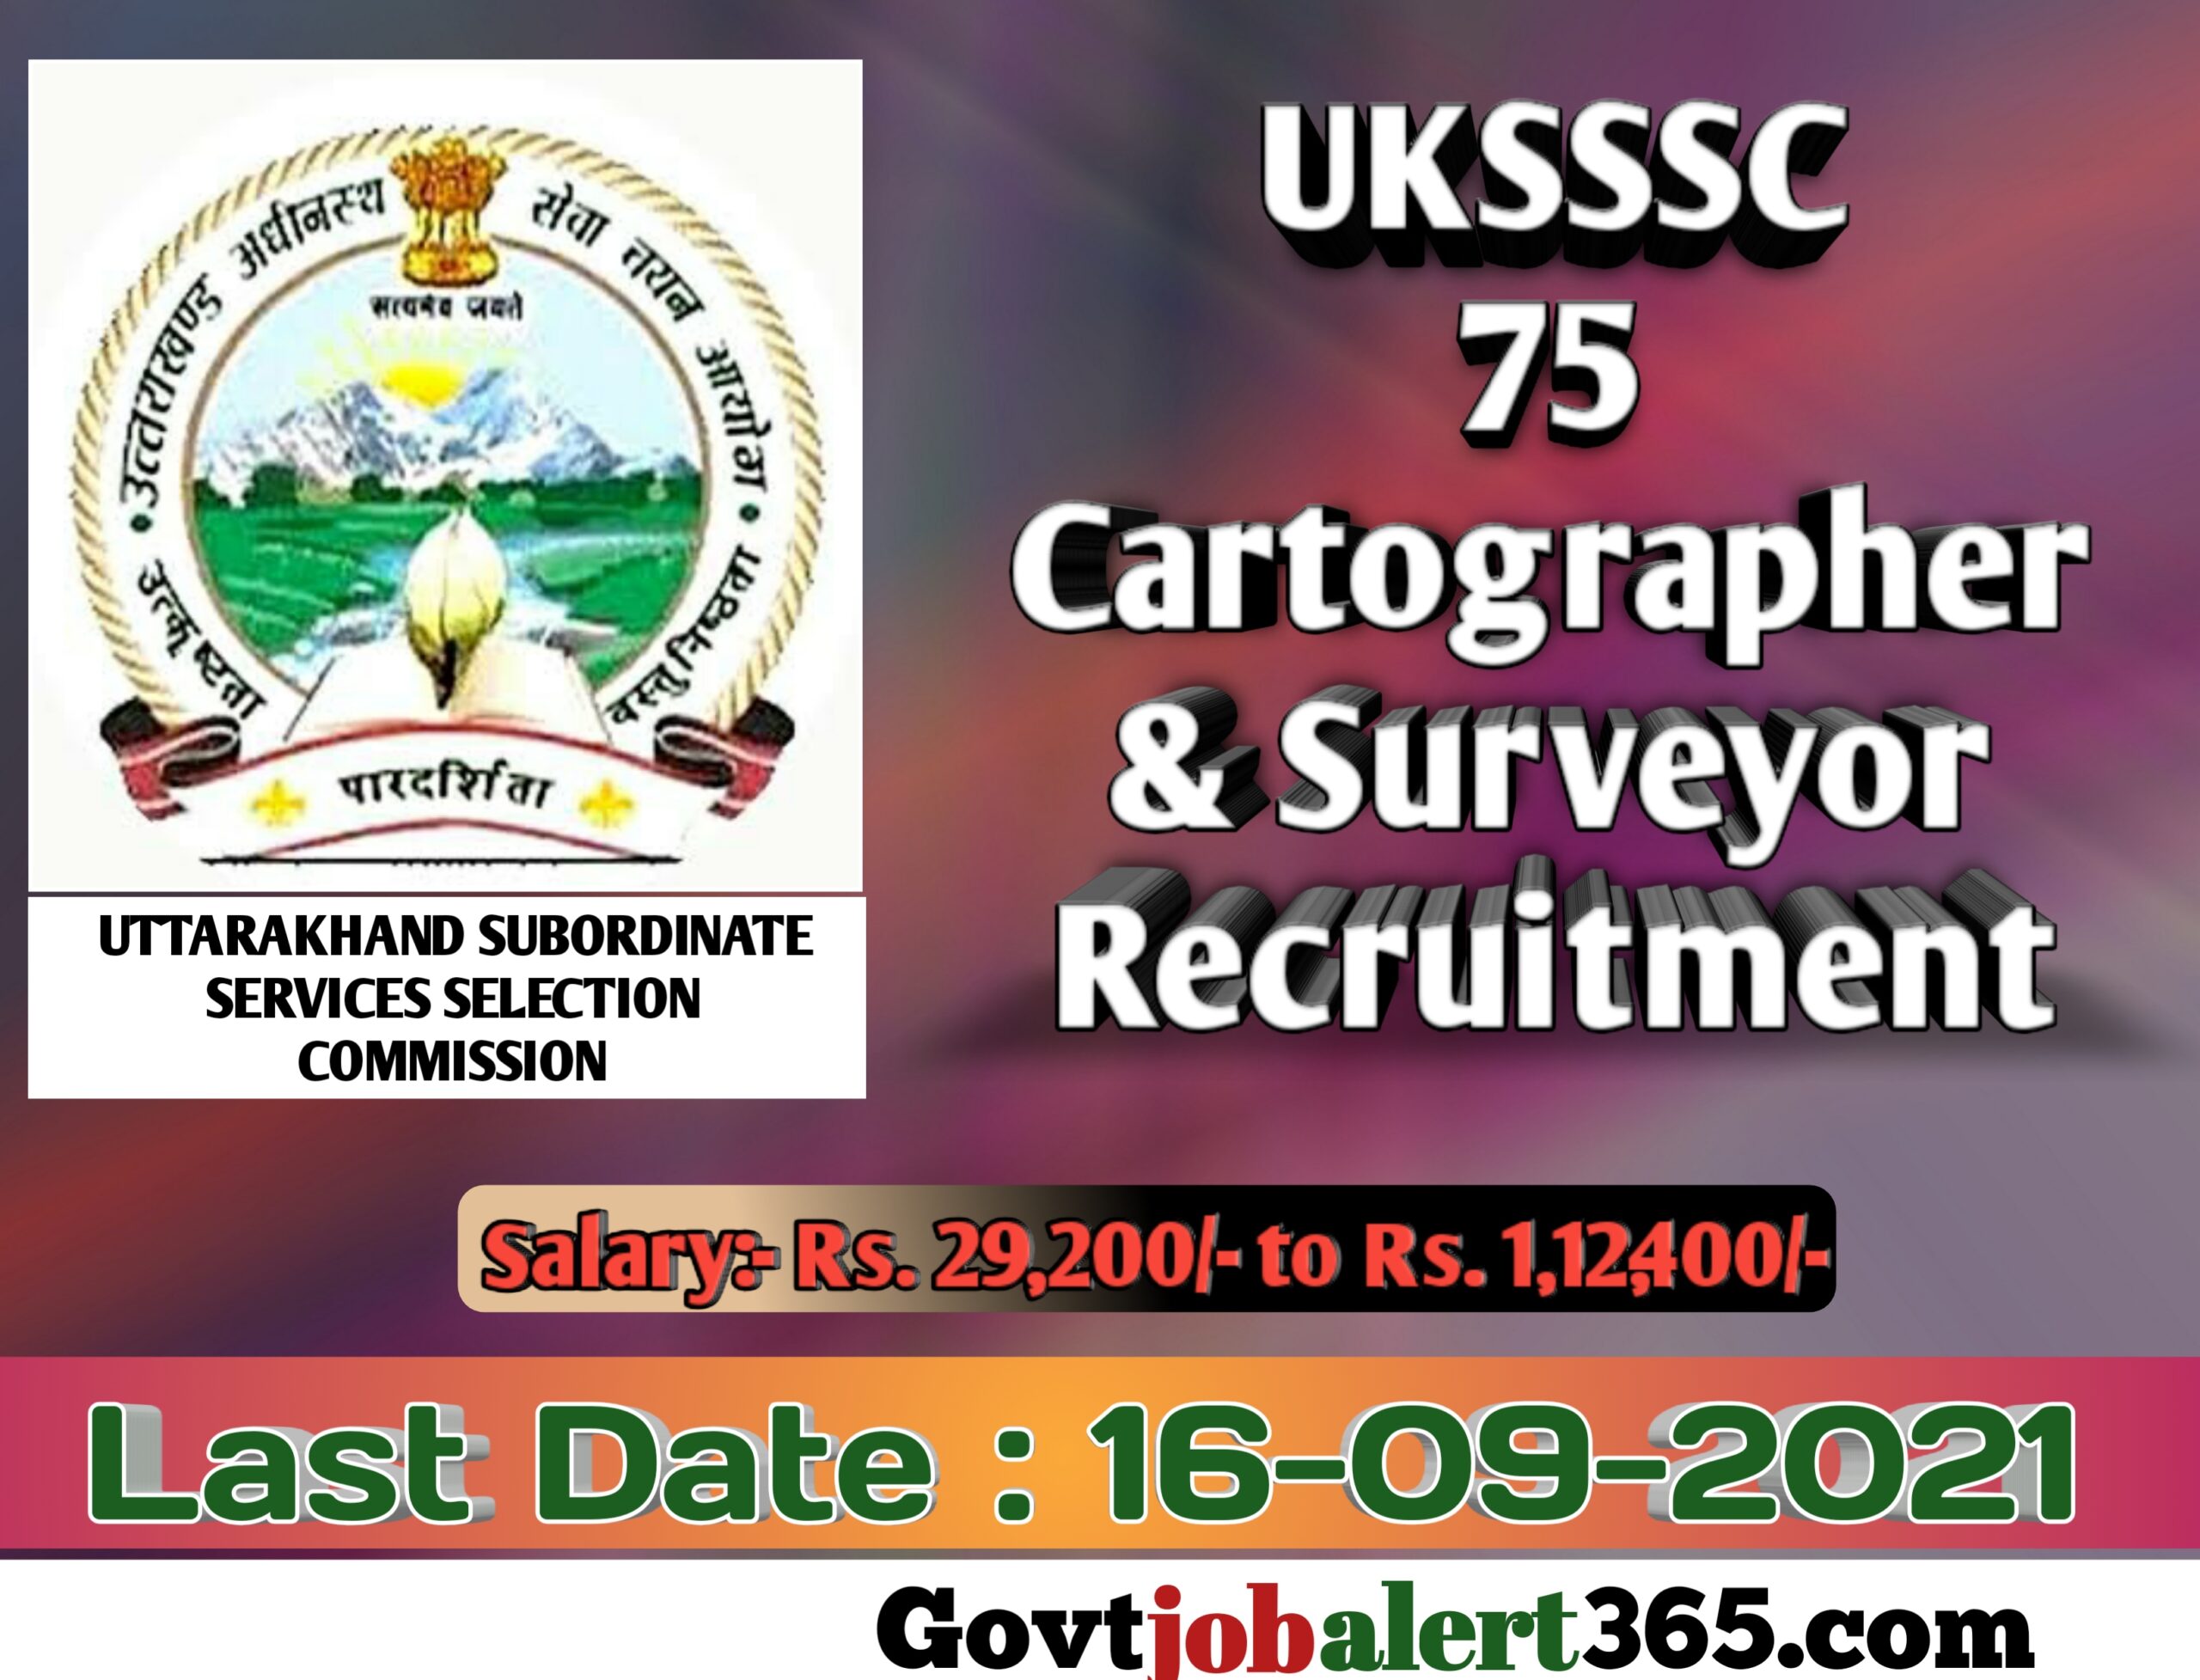 Uttarakhand Subordinate Services Selection Commission Cartographer & Surveyor Recruitment 2021